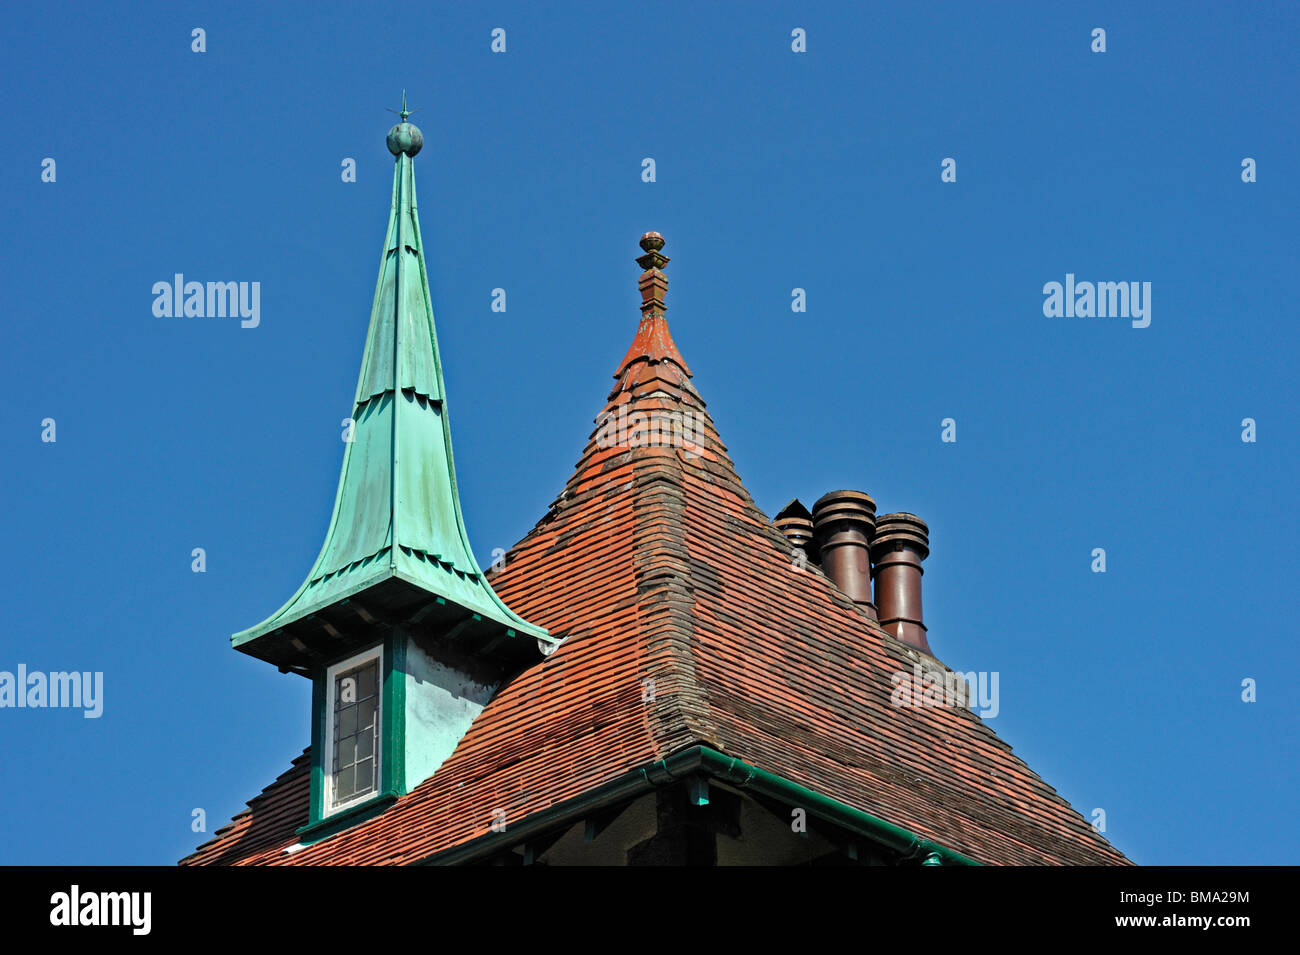 Dachfenster und Spirelet. 'Hillcote', 80, Gillinggate, Kendal, Cumbria, England, Vereinigtes Königreich Europas. Stockfoto